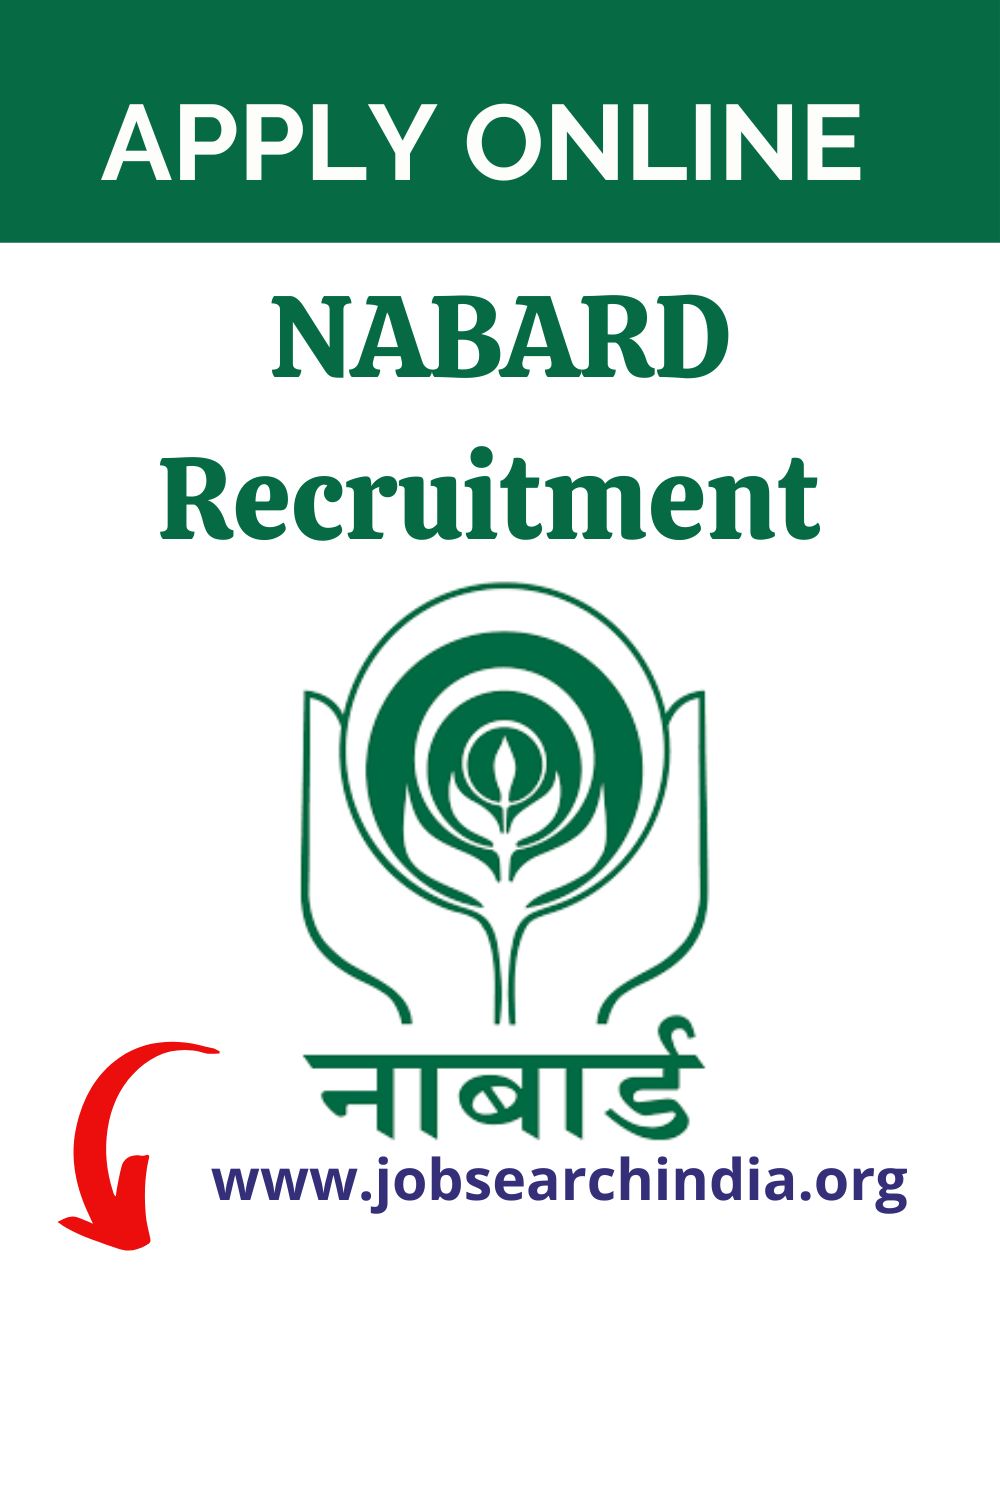 NABARD Recruitment 2022